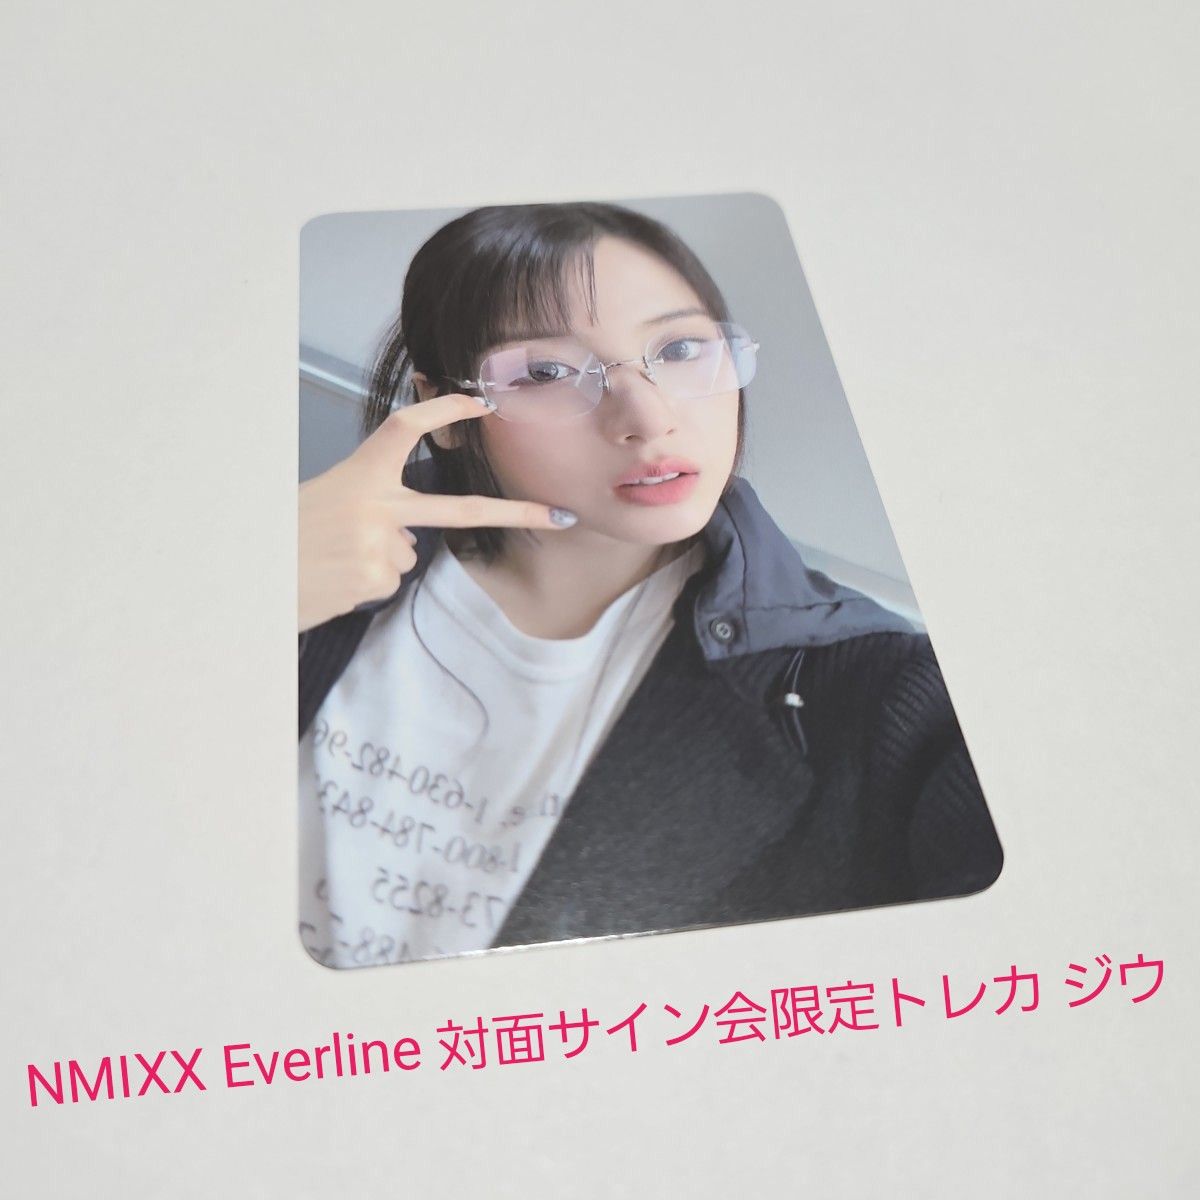 NMIXX Everline 対面サイン会限定トレカ ジウ